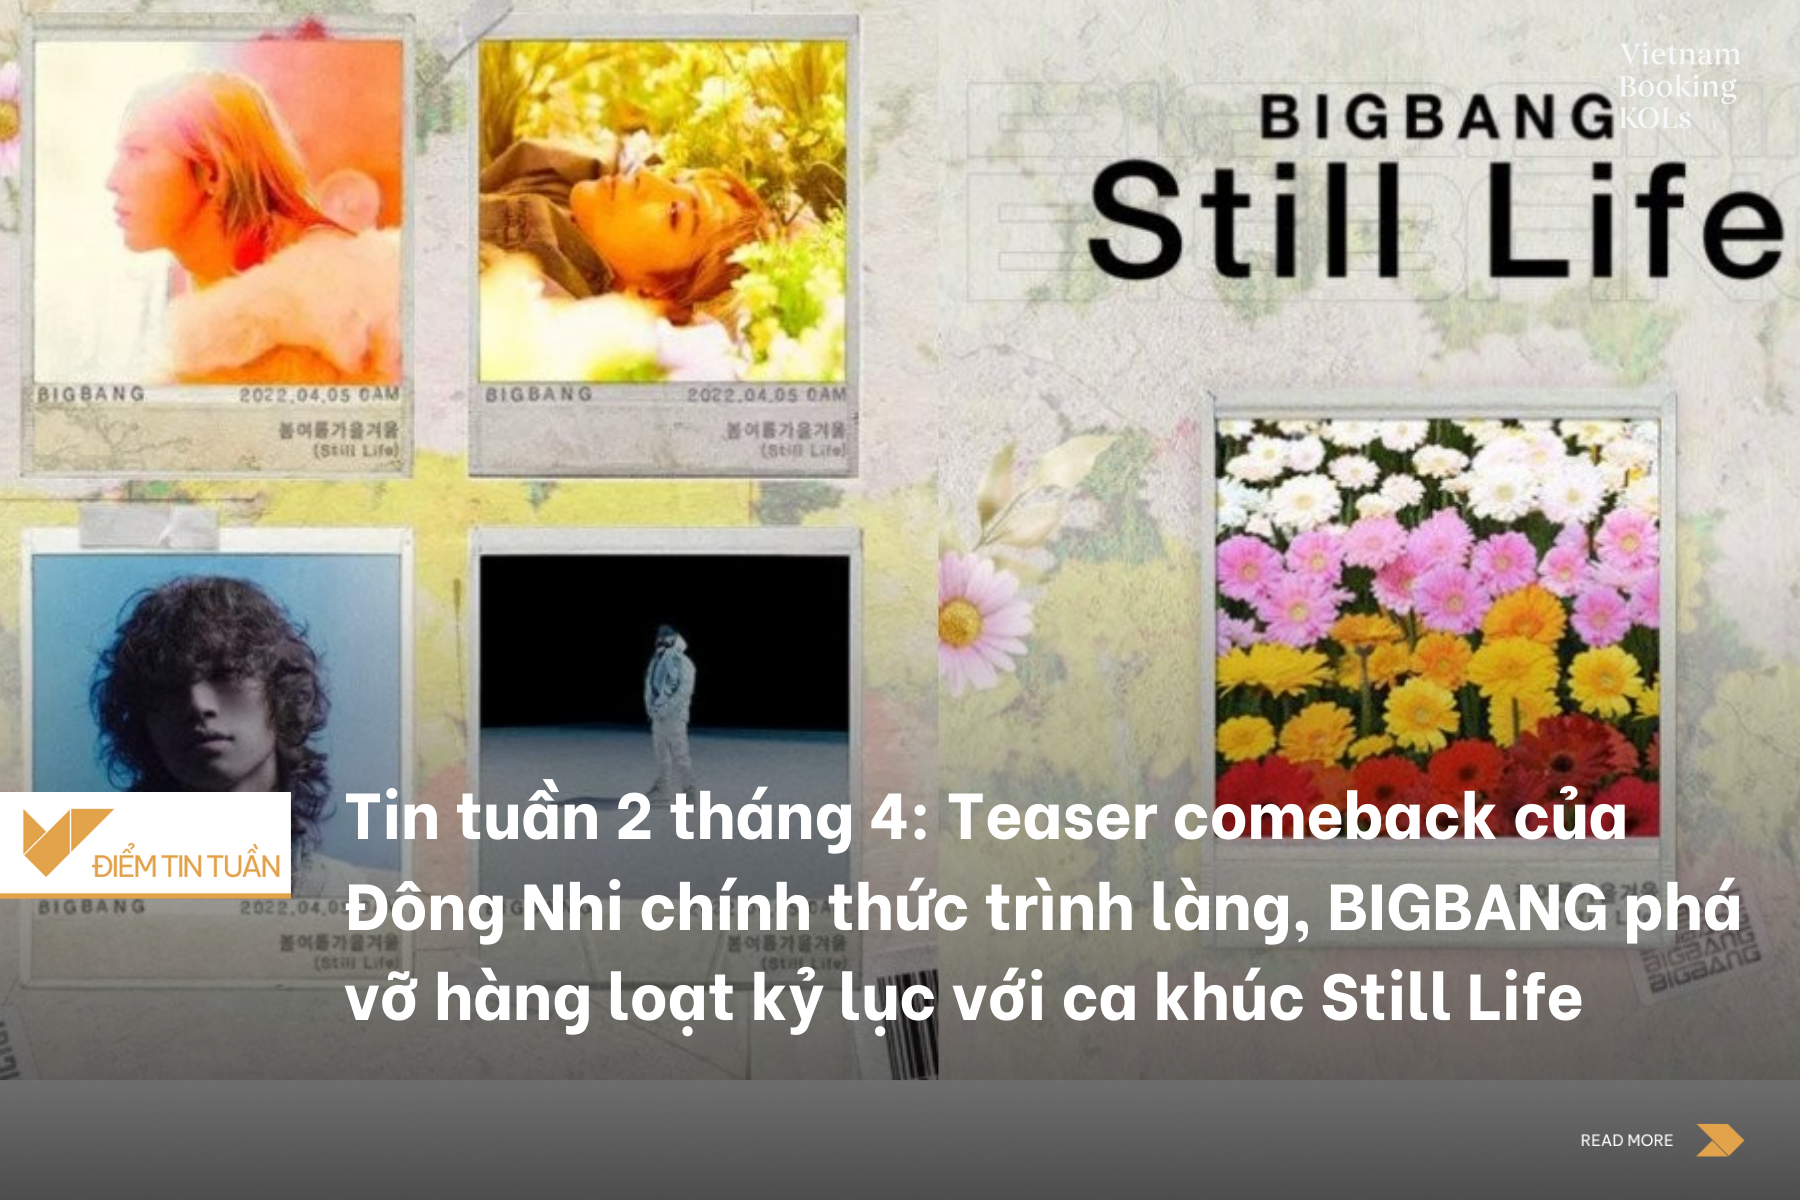 Tin tuần 2 tháng 4: Teaser comeback của Đông Nhi chính thức trình làng, BIGBANG phá vỡ hàng loạt kỷ lục với ca khúc Still Life